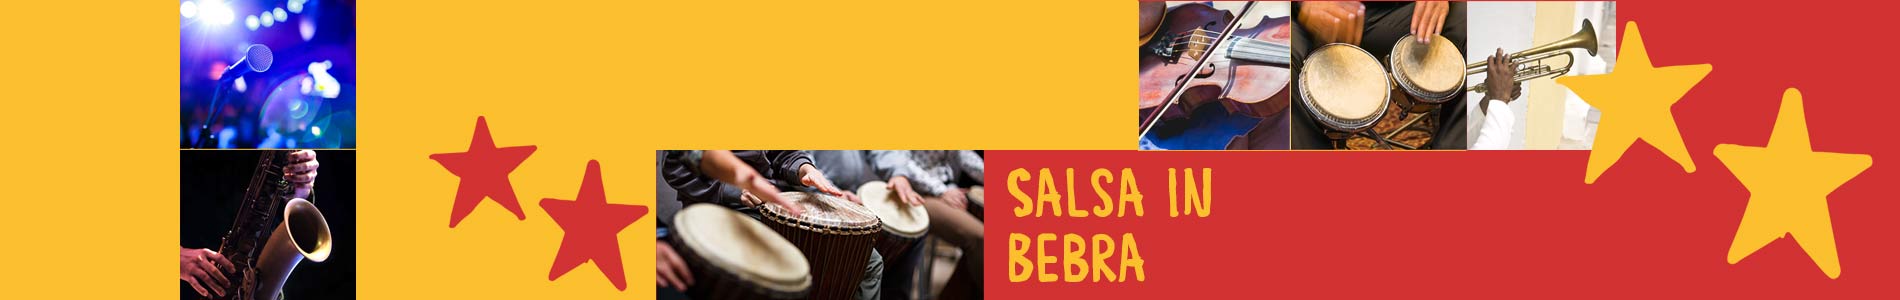 Salsa in Bebra – Salsa lernen und tanzen, Tanzkurse, Partys, Veranstaltungen